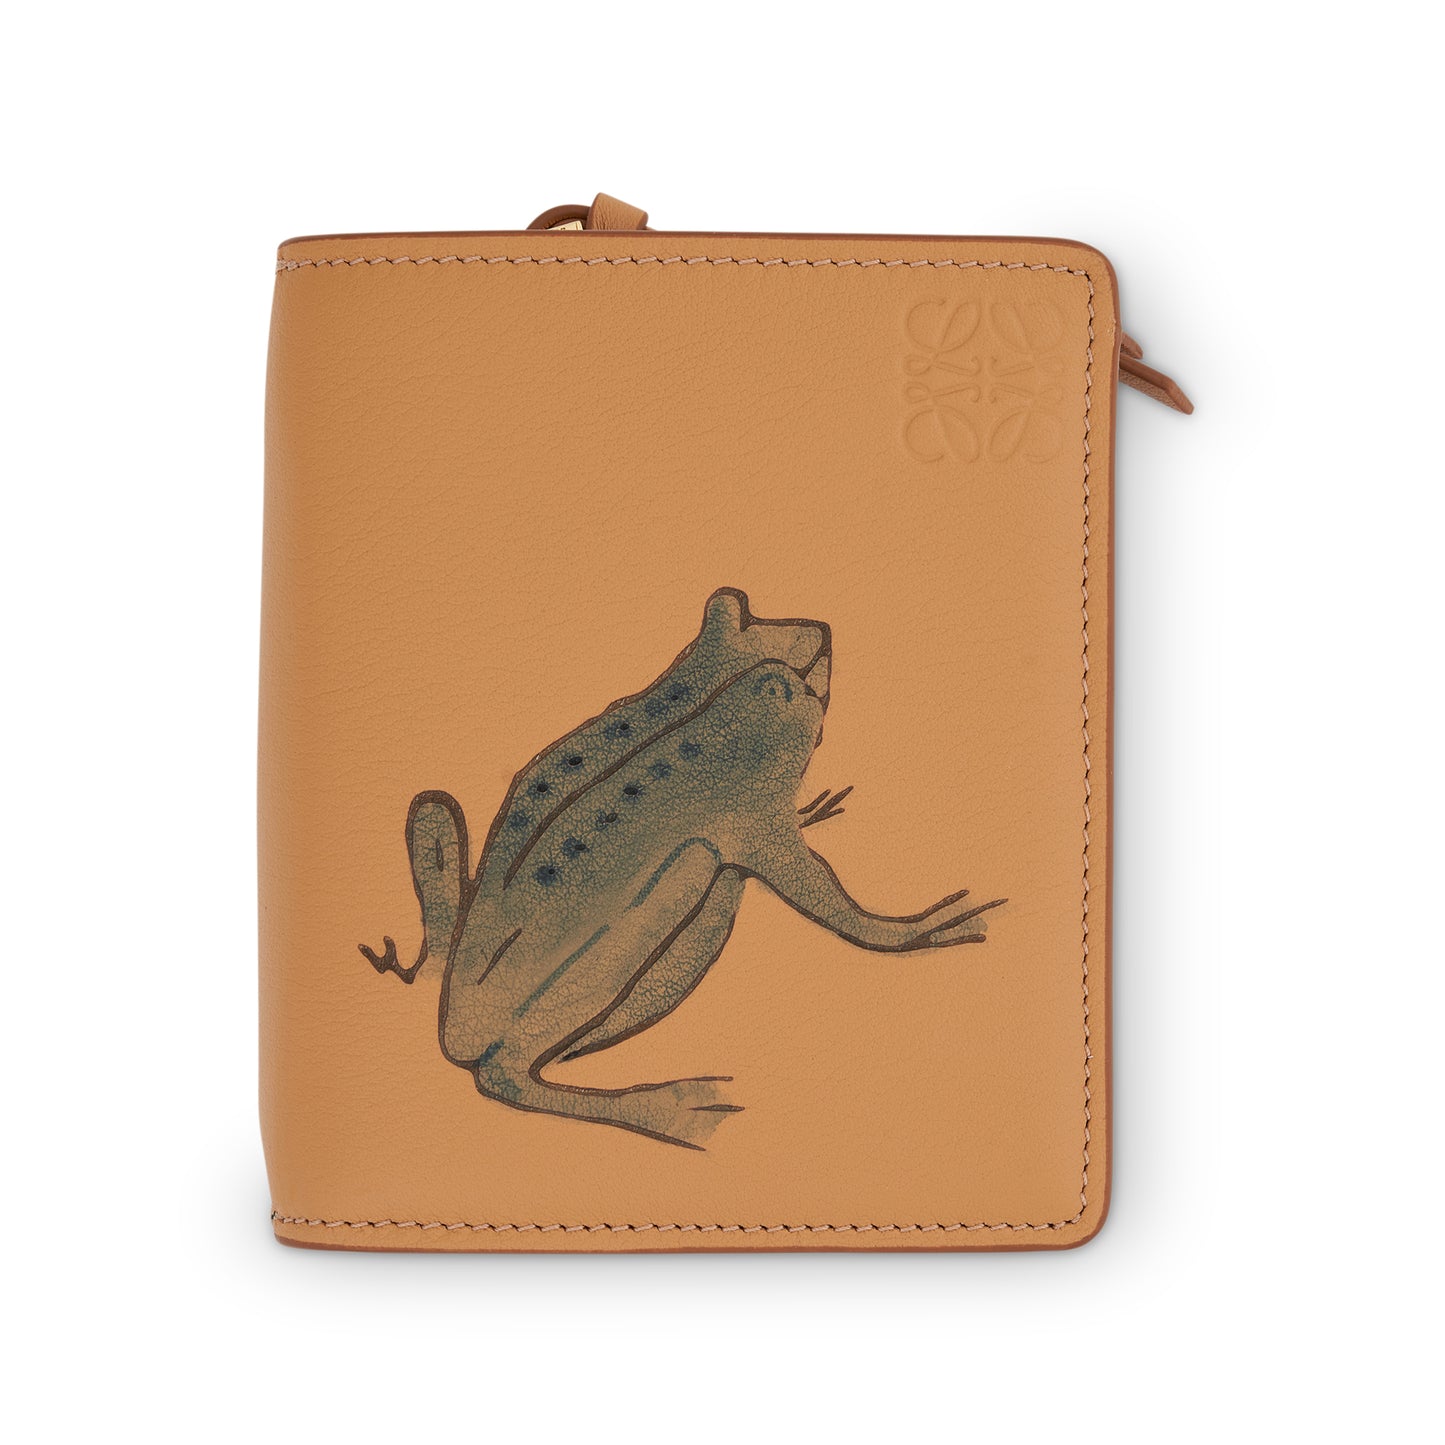 Frog Compact Zip Wallet in Classic Calfskin in Warm Dessert